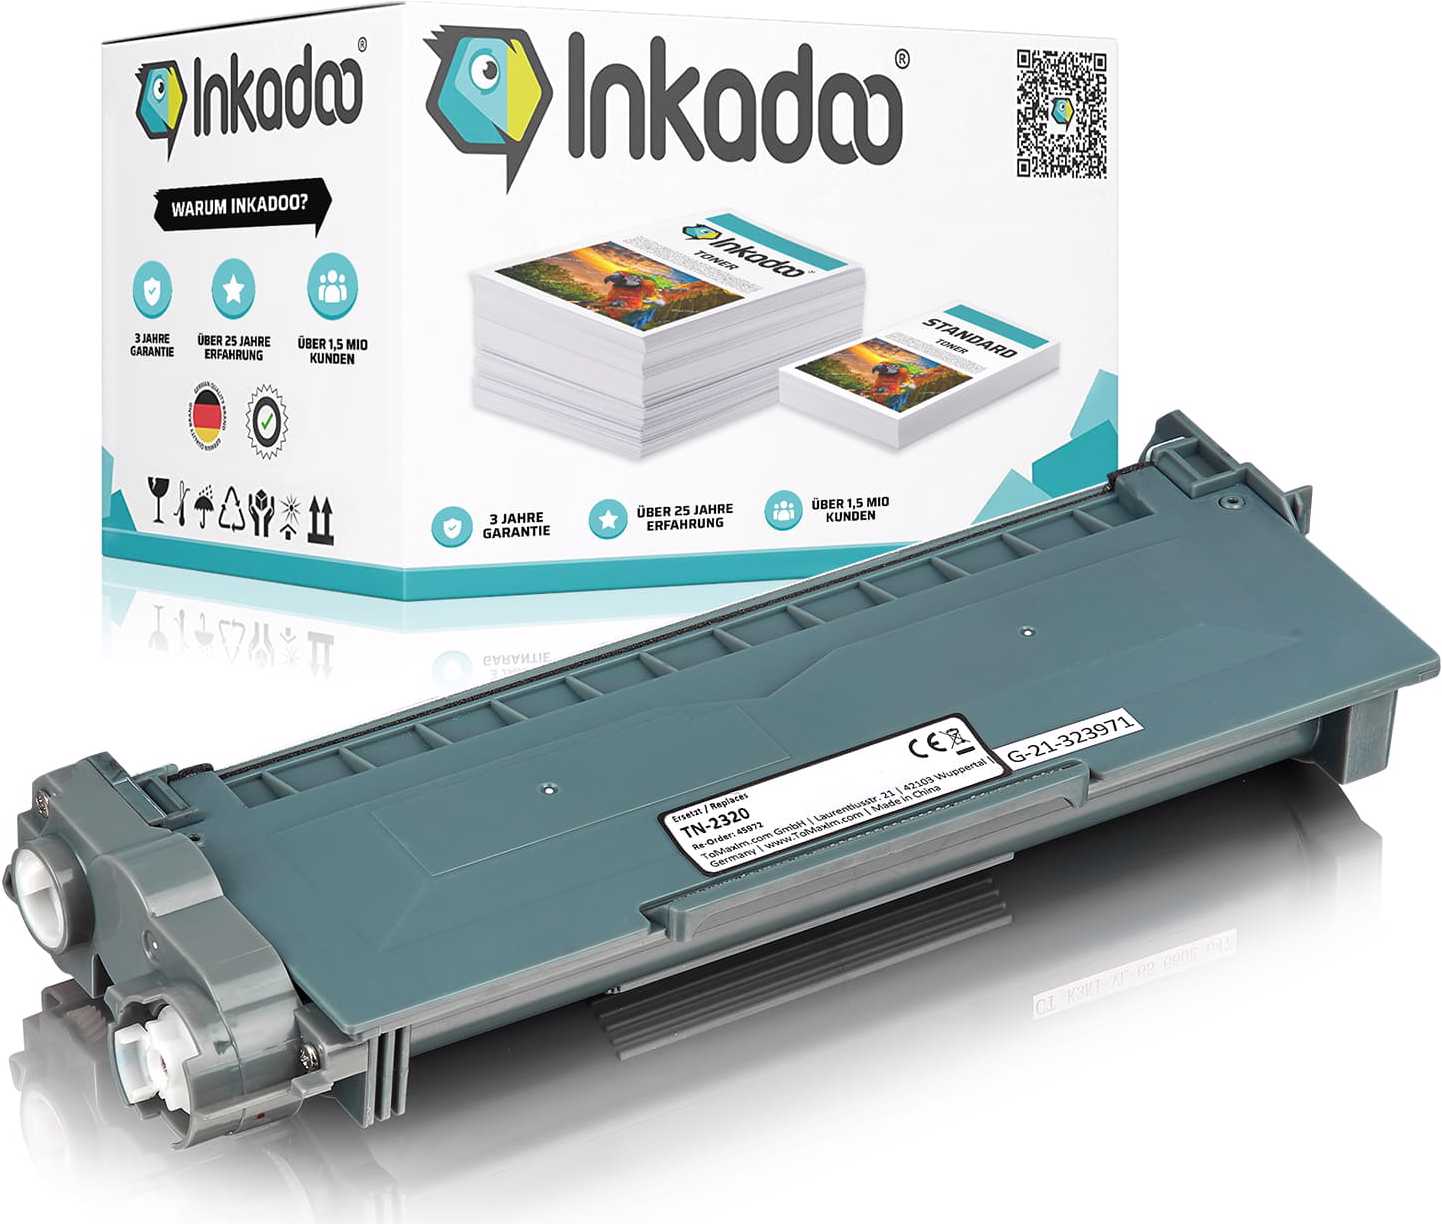 Inkadoo kompatibler Toner als Ersatz für Brother TN 2320 passend für Brother DCP-L 2500 D DCP-L 2520 DCP-L (BK) Galaxus